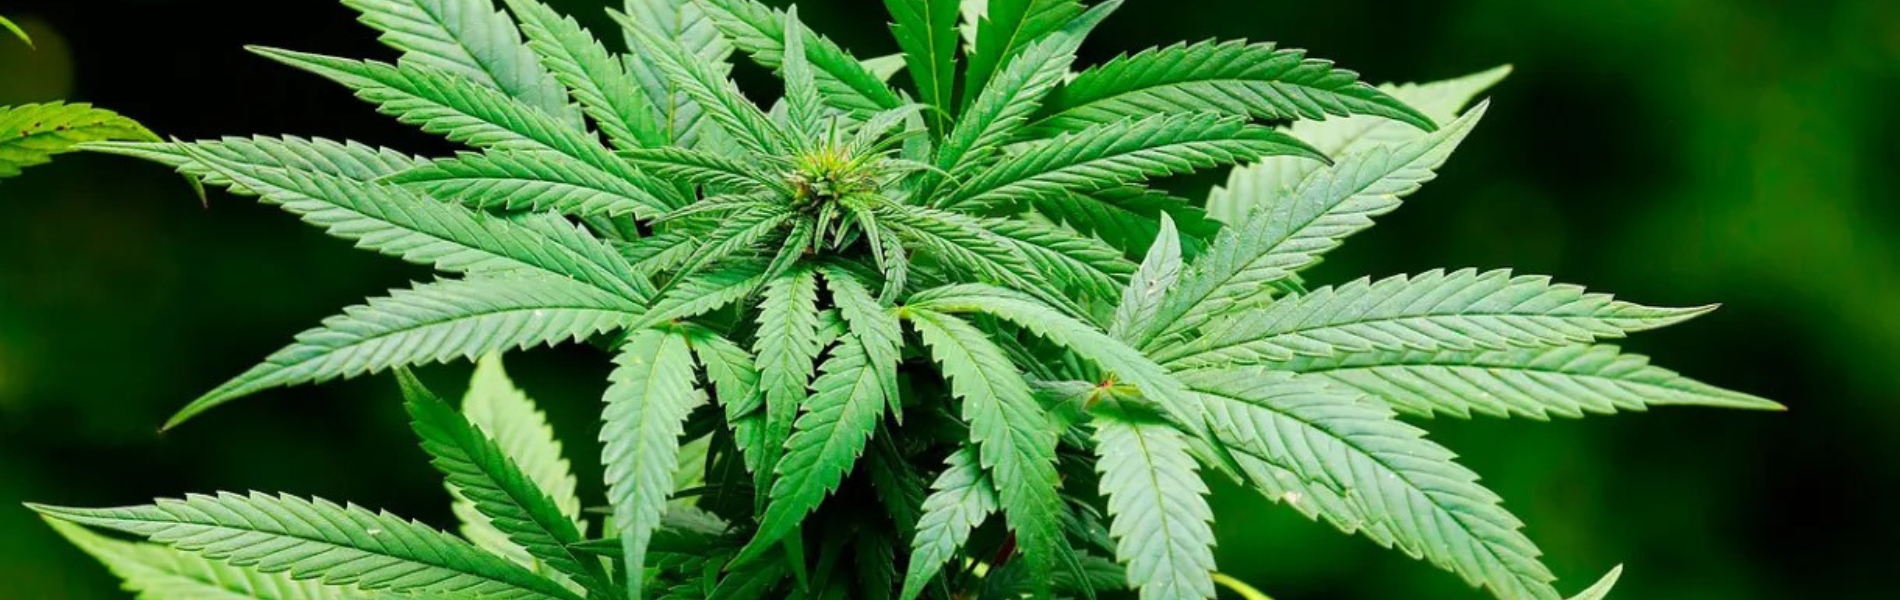 Foto da planta cannabis sativa